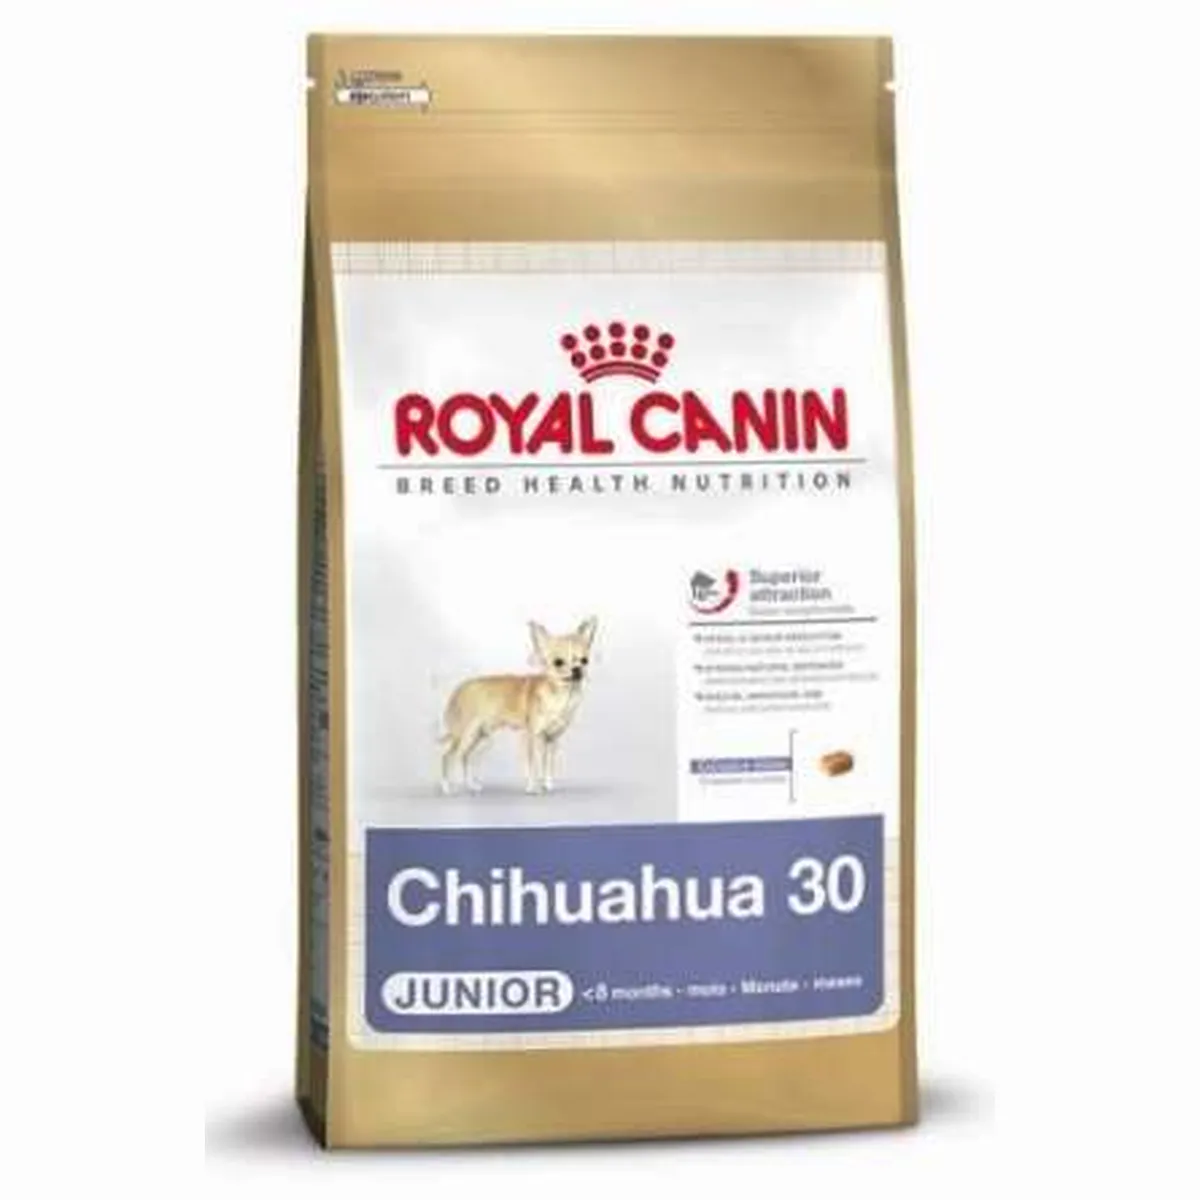 Royal Canin Chihuahua Junior - 500 g